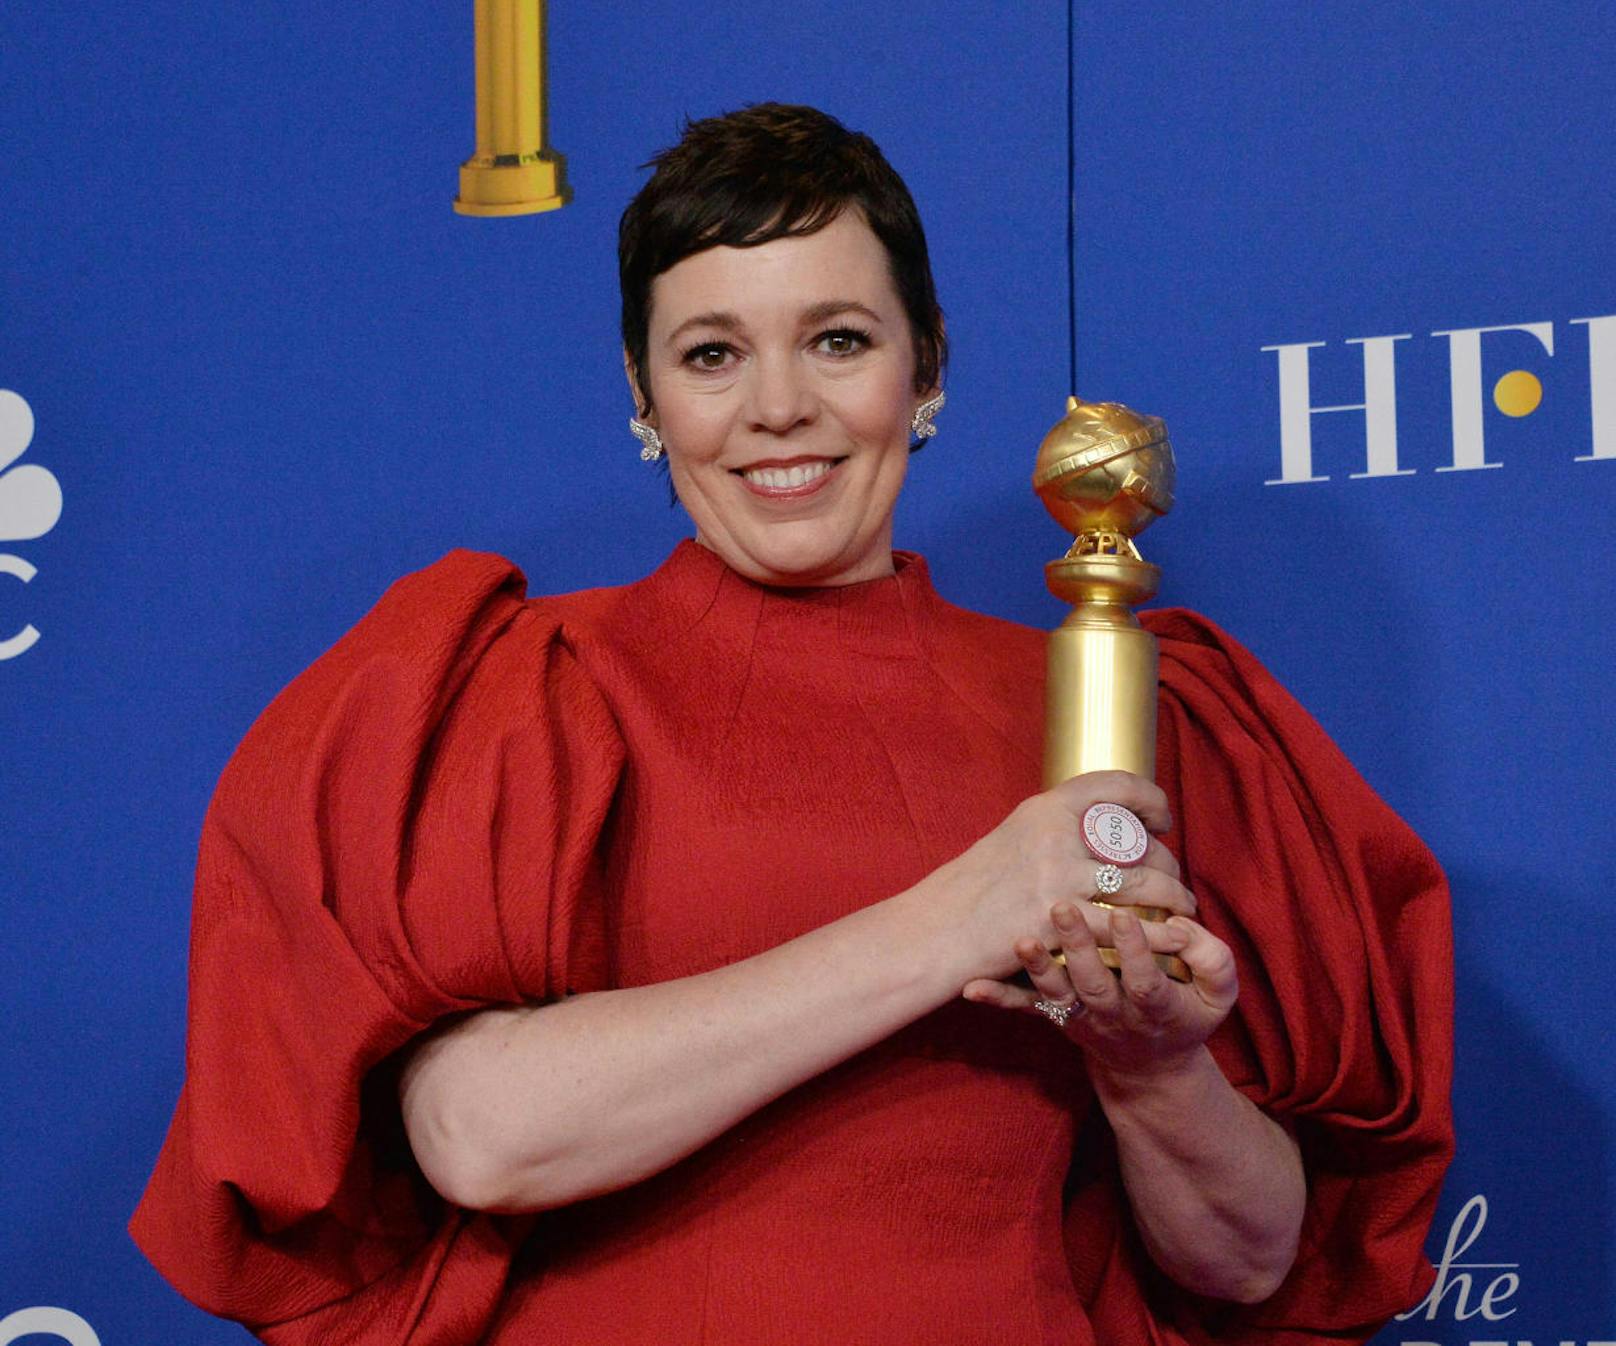 Für ihre Leistung im Netflix-Drama "The Crown" wurde Olivia Colman ausgezeichnet.